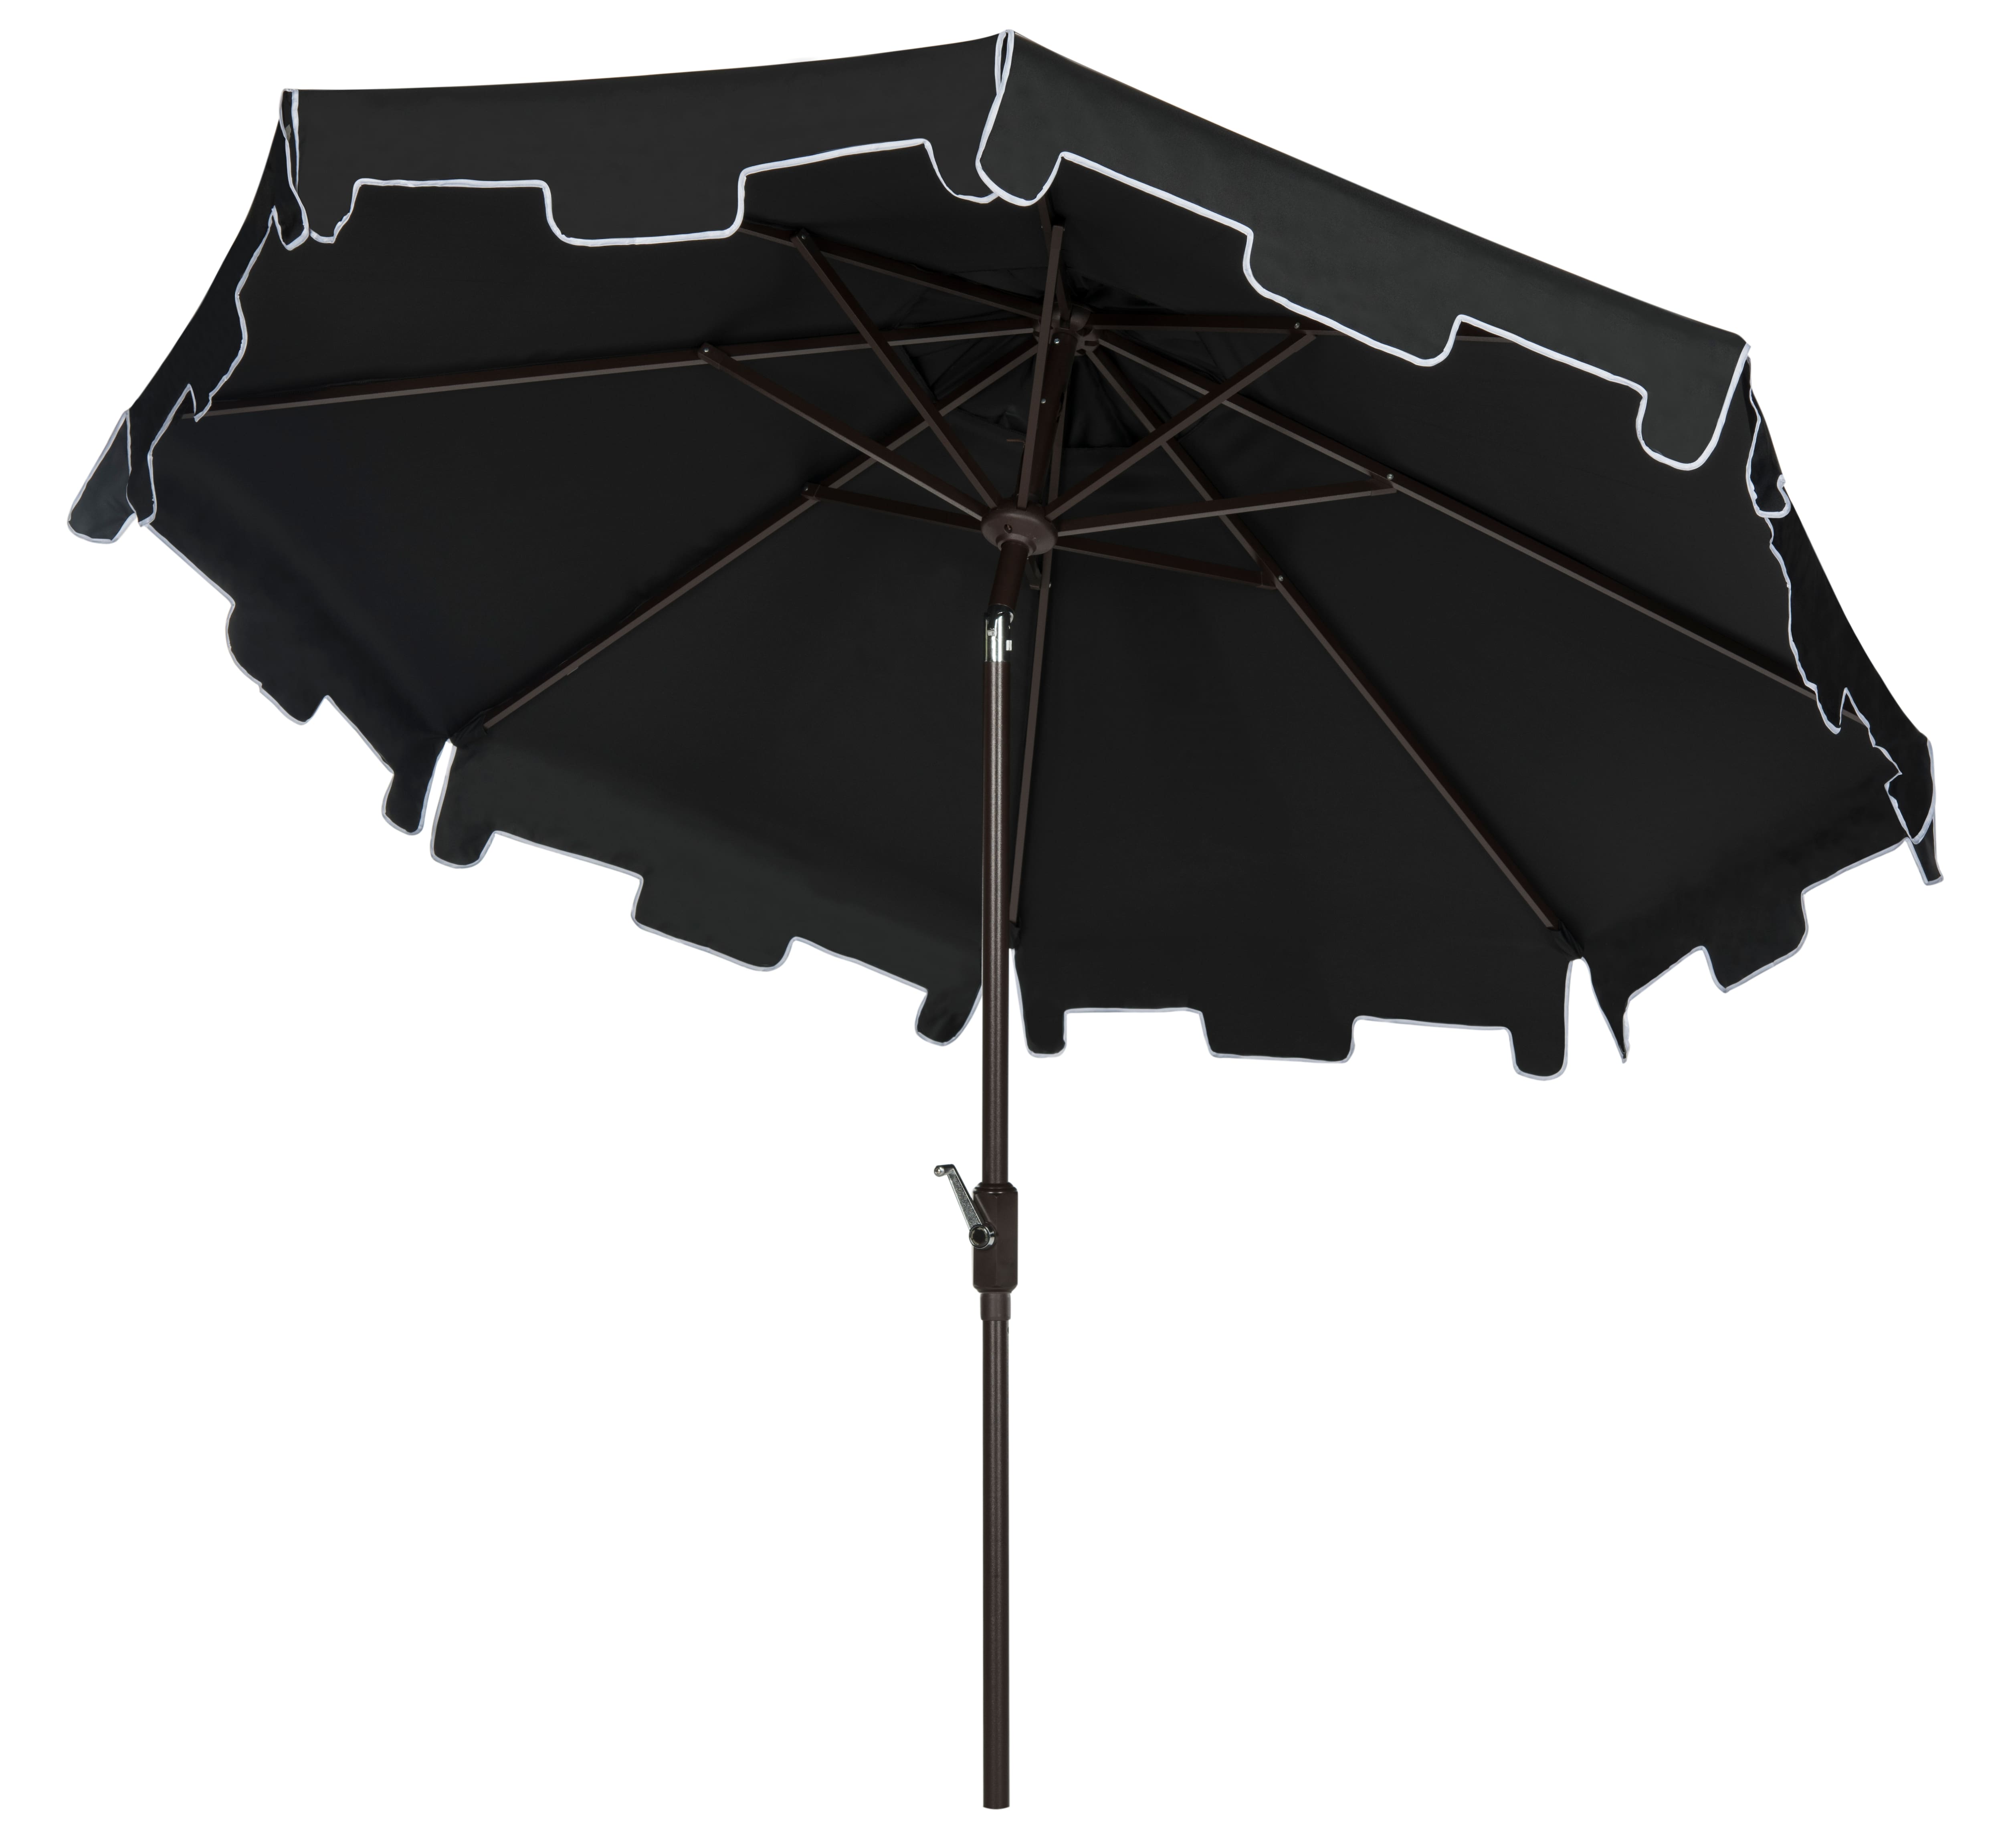 Zimmerman 9 Ft Market Umbrella in Black